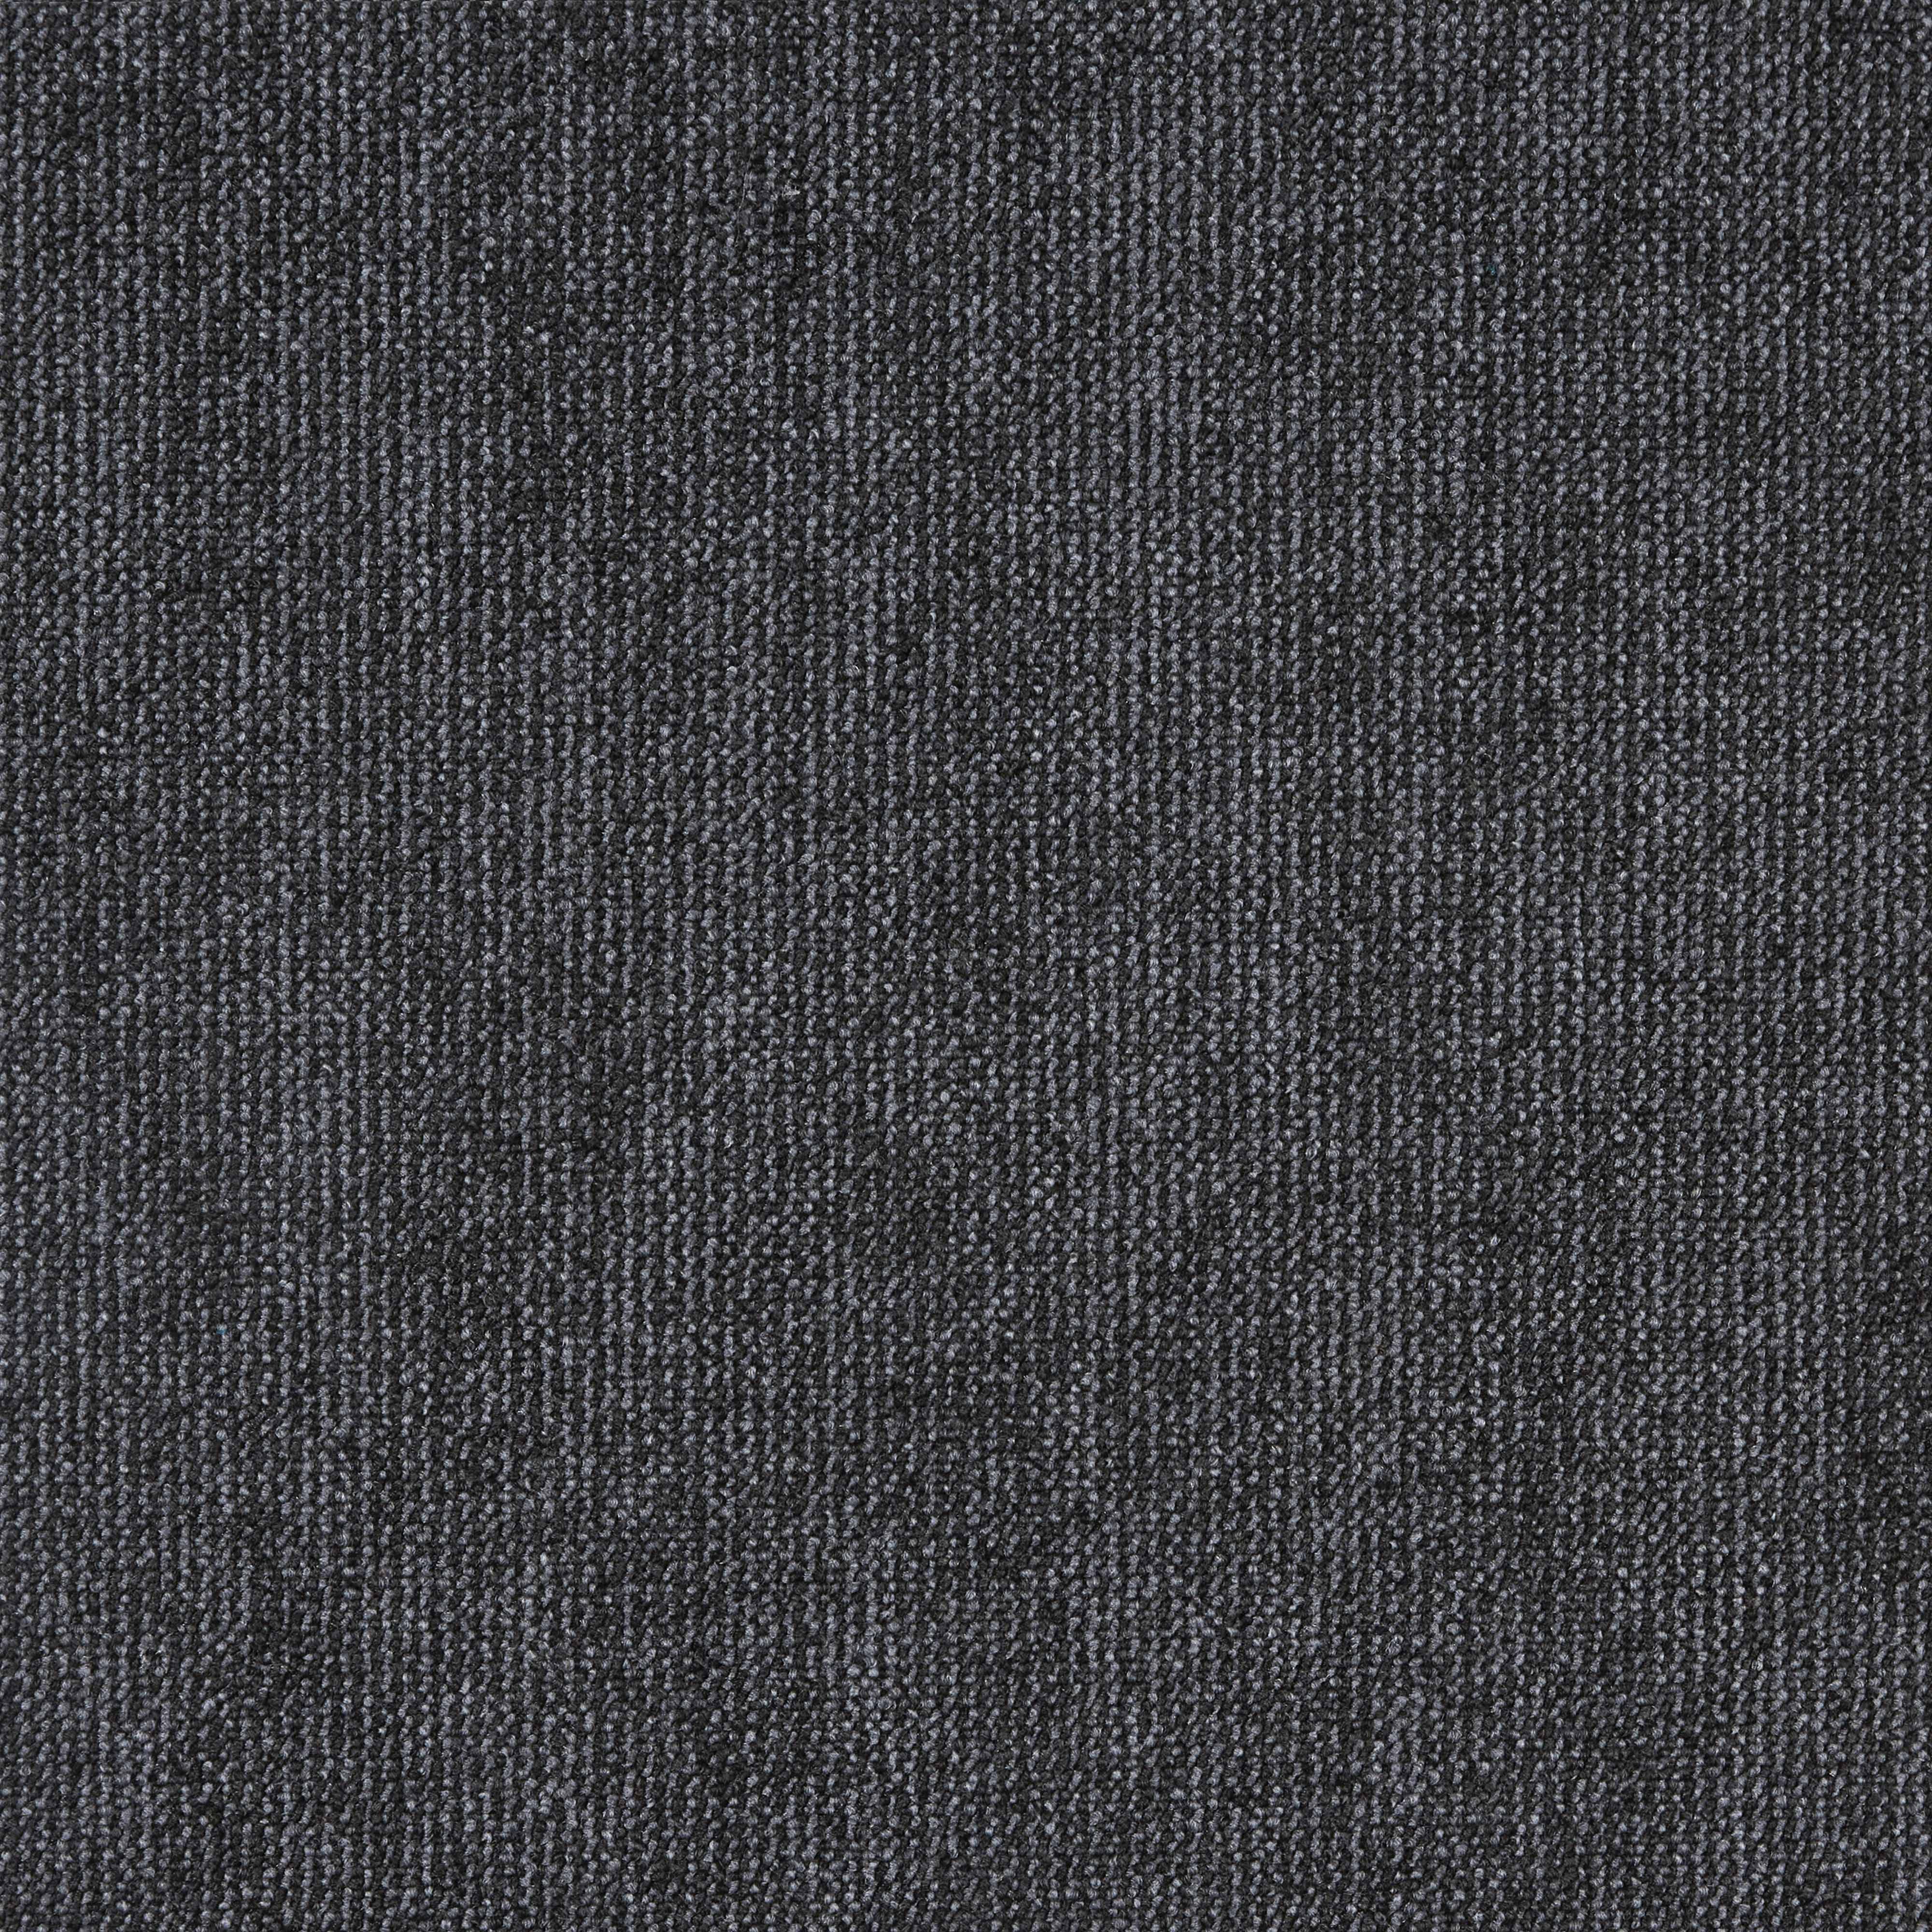 Ковровая плитка Illusion - InnovFlor (ИнновФлор) Illusion F02 0.5*0.5 м